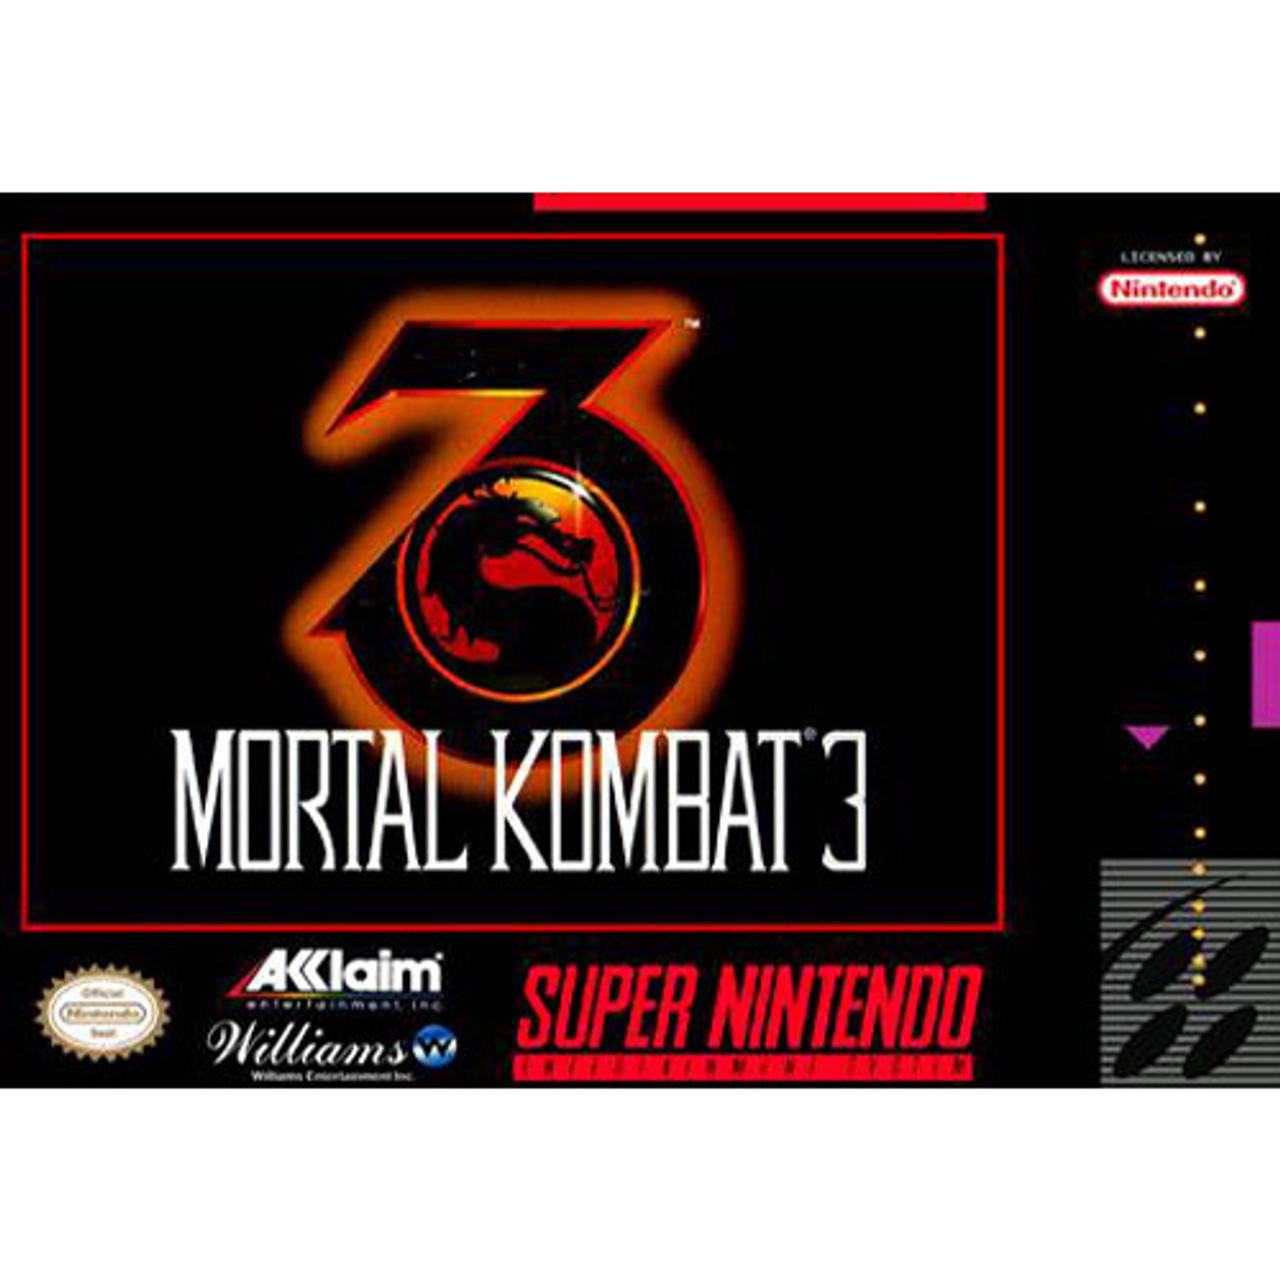 mortal-kombat-characters-nintendo-review-mortal-kombat-11-for-switch-nintendo-wire-mortal